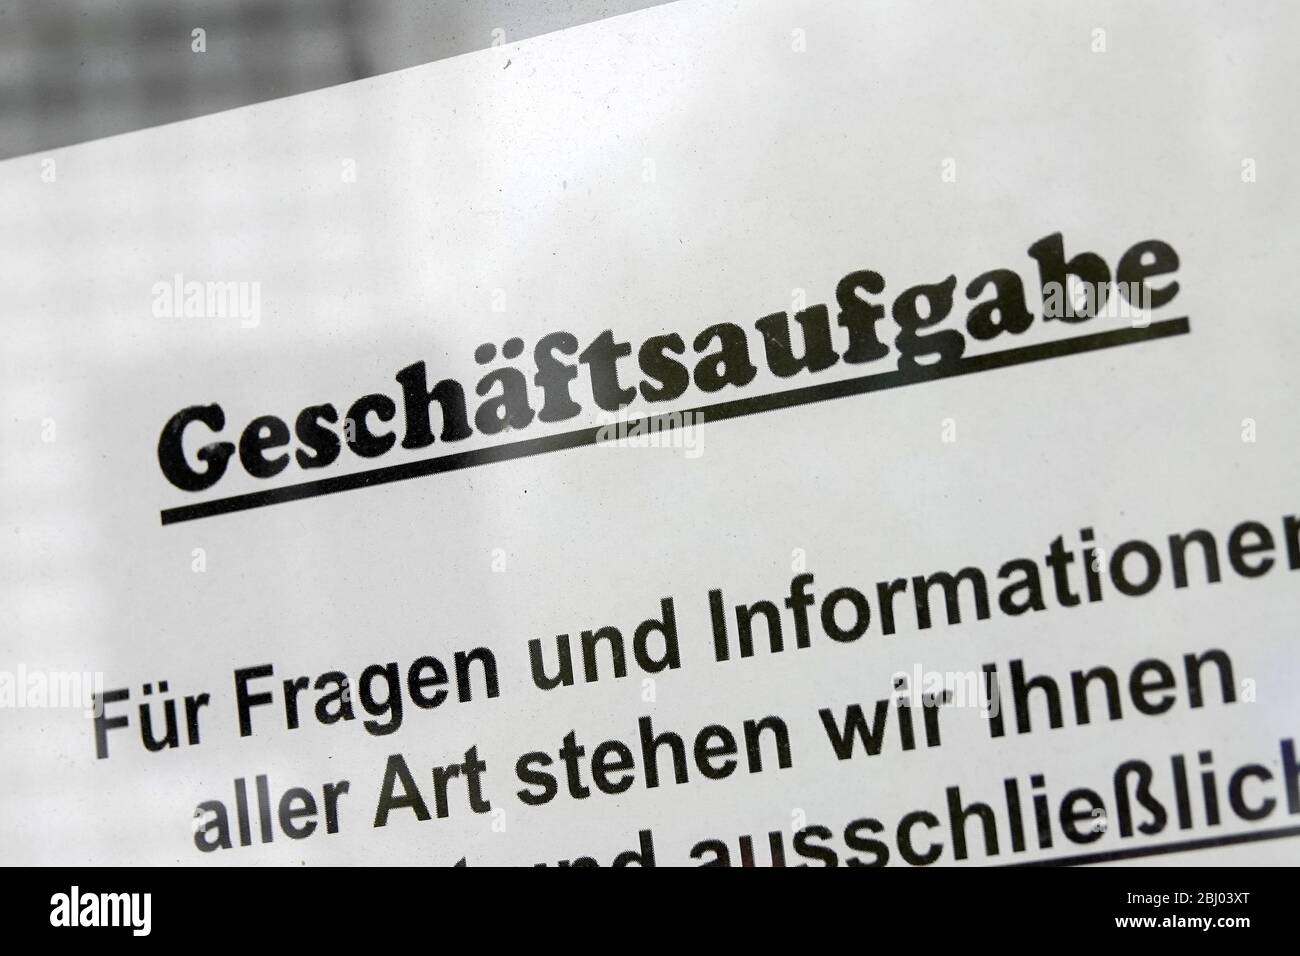 Hamburgo, Alemania. 27 de abril de 2020. Una hoja de papel con la inscripción 'Geschäftsaufgabe' (cerrando) cuelga en una ventana de una tienda cerrada. Crédito: Bodo Marks/dpa/Alamy Live News Foto de stock